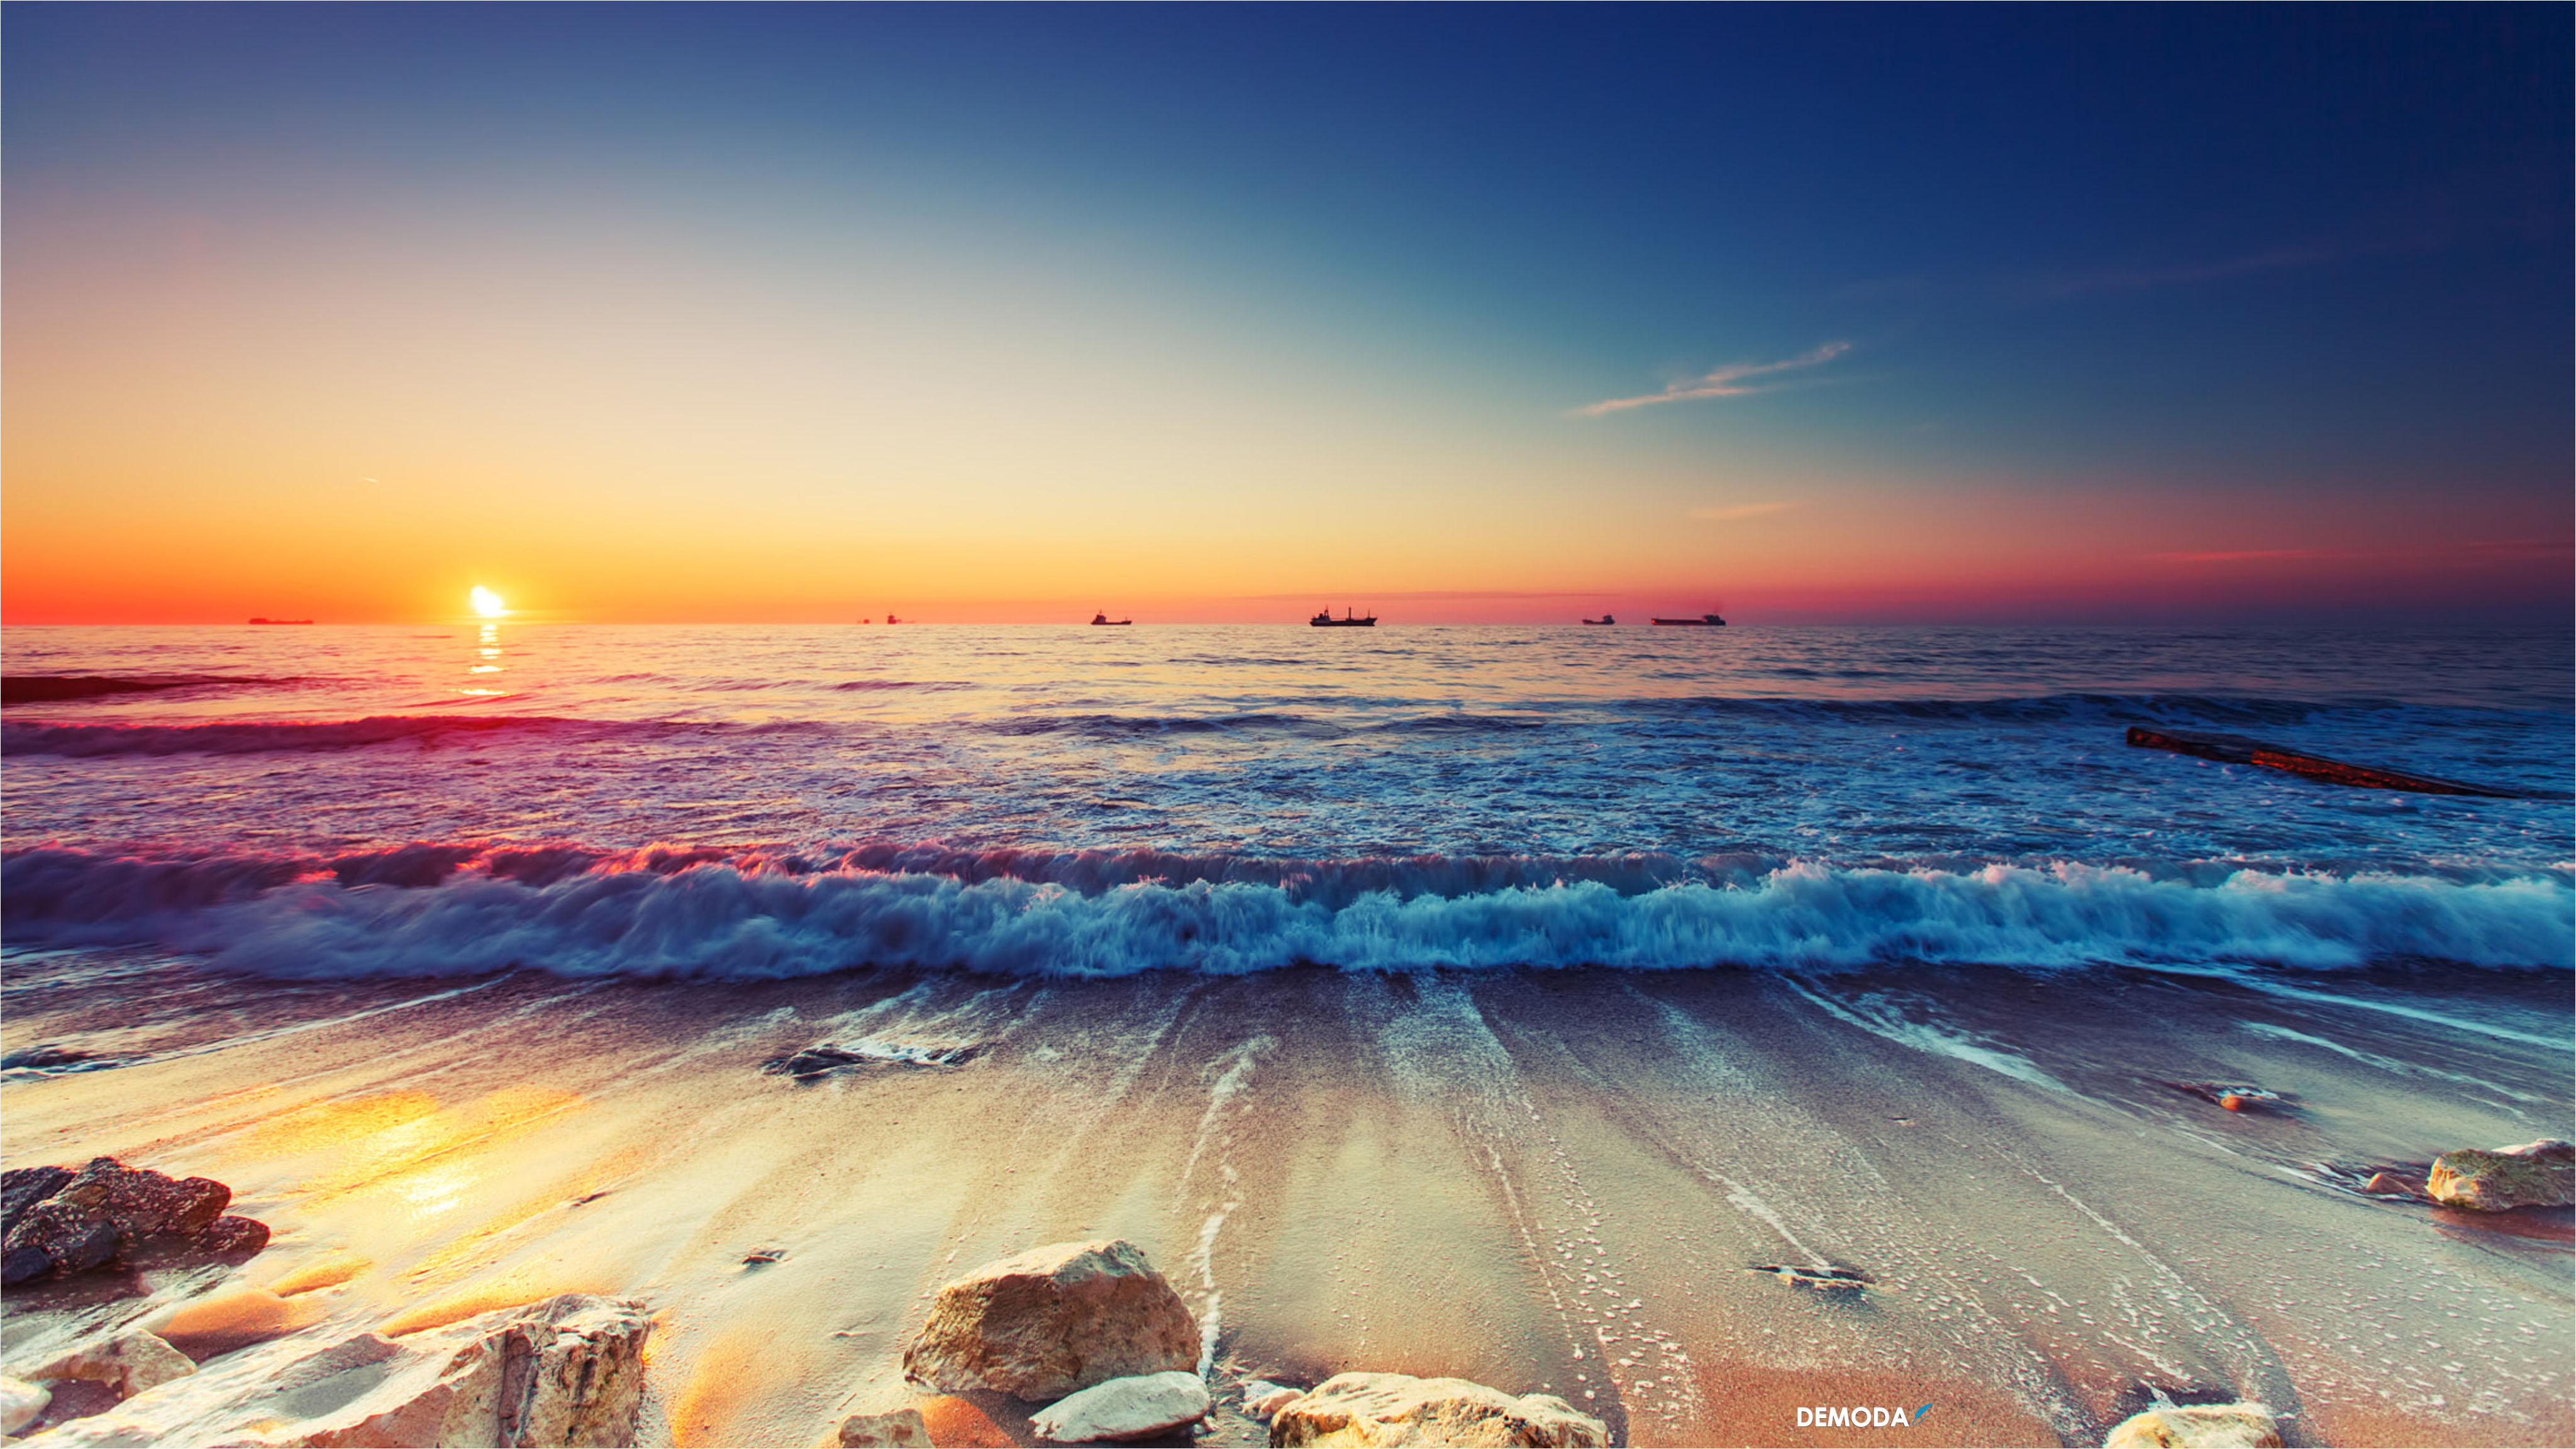 Hình ảnh biển đẹp là món quà tuyệt vời để đem đến cho bạn bình yên và sự thư thái. Bạn sẽ bị cuốn hút bởi vẻ đẹp hoang sơ của các bãi biển, những đợt sóng lớn và cát trắng. Hãy xem và tận hưởng!